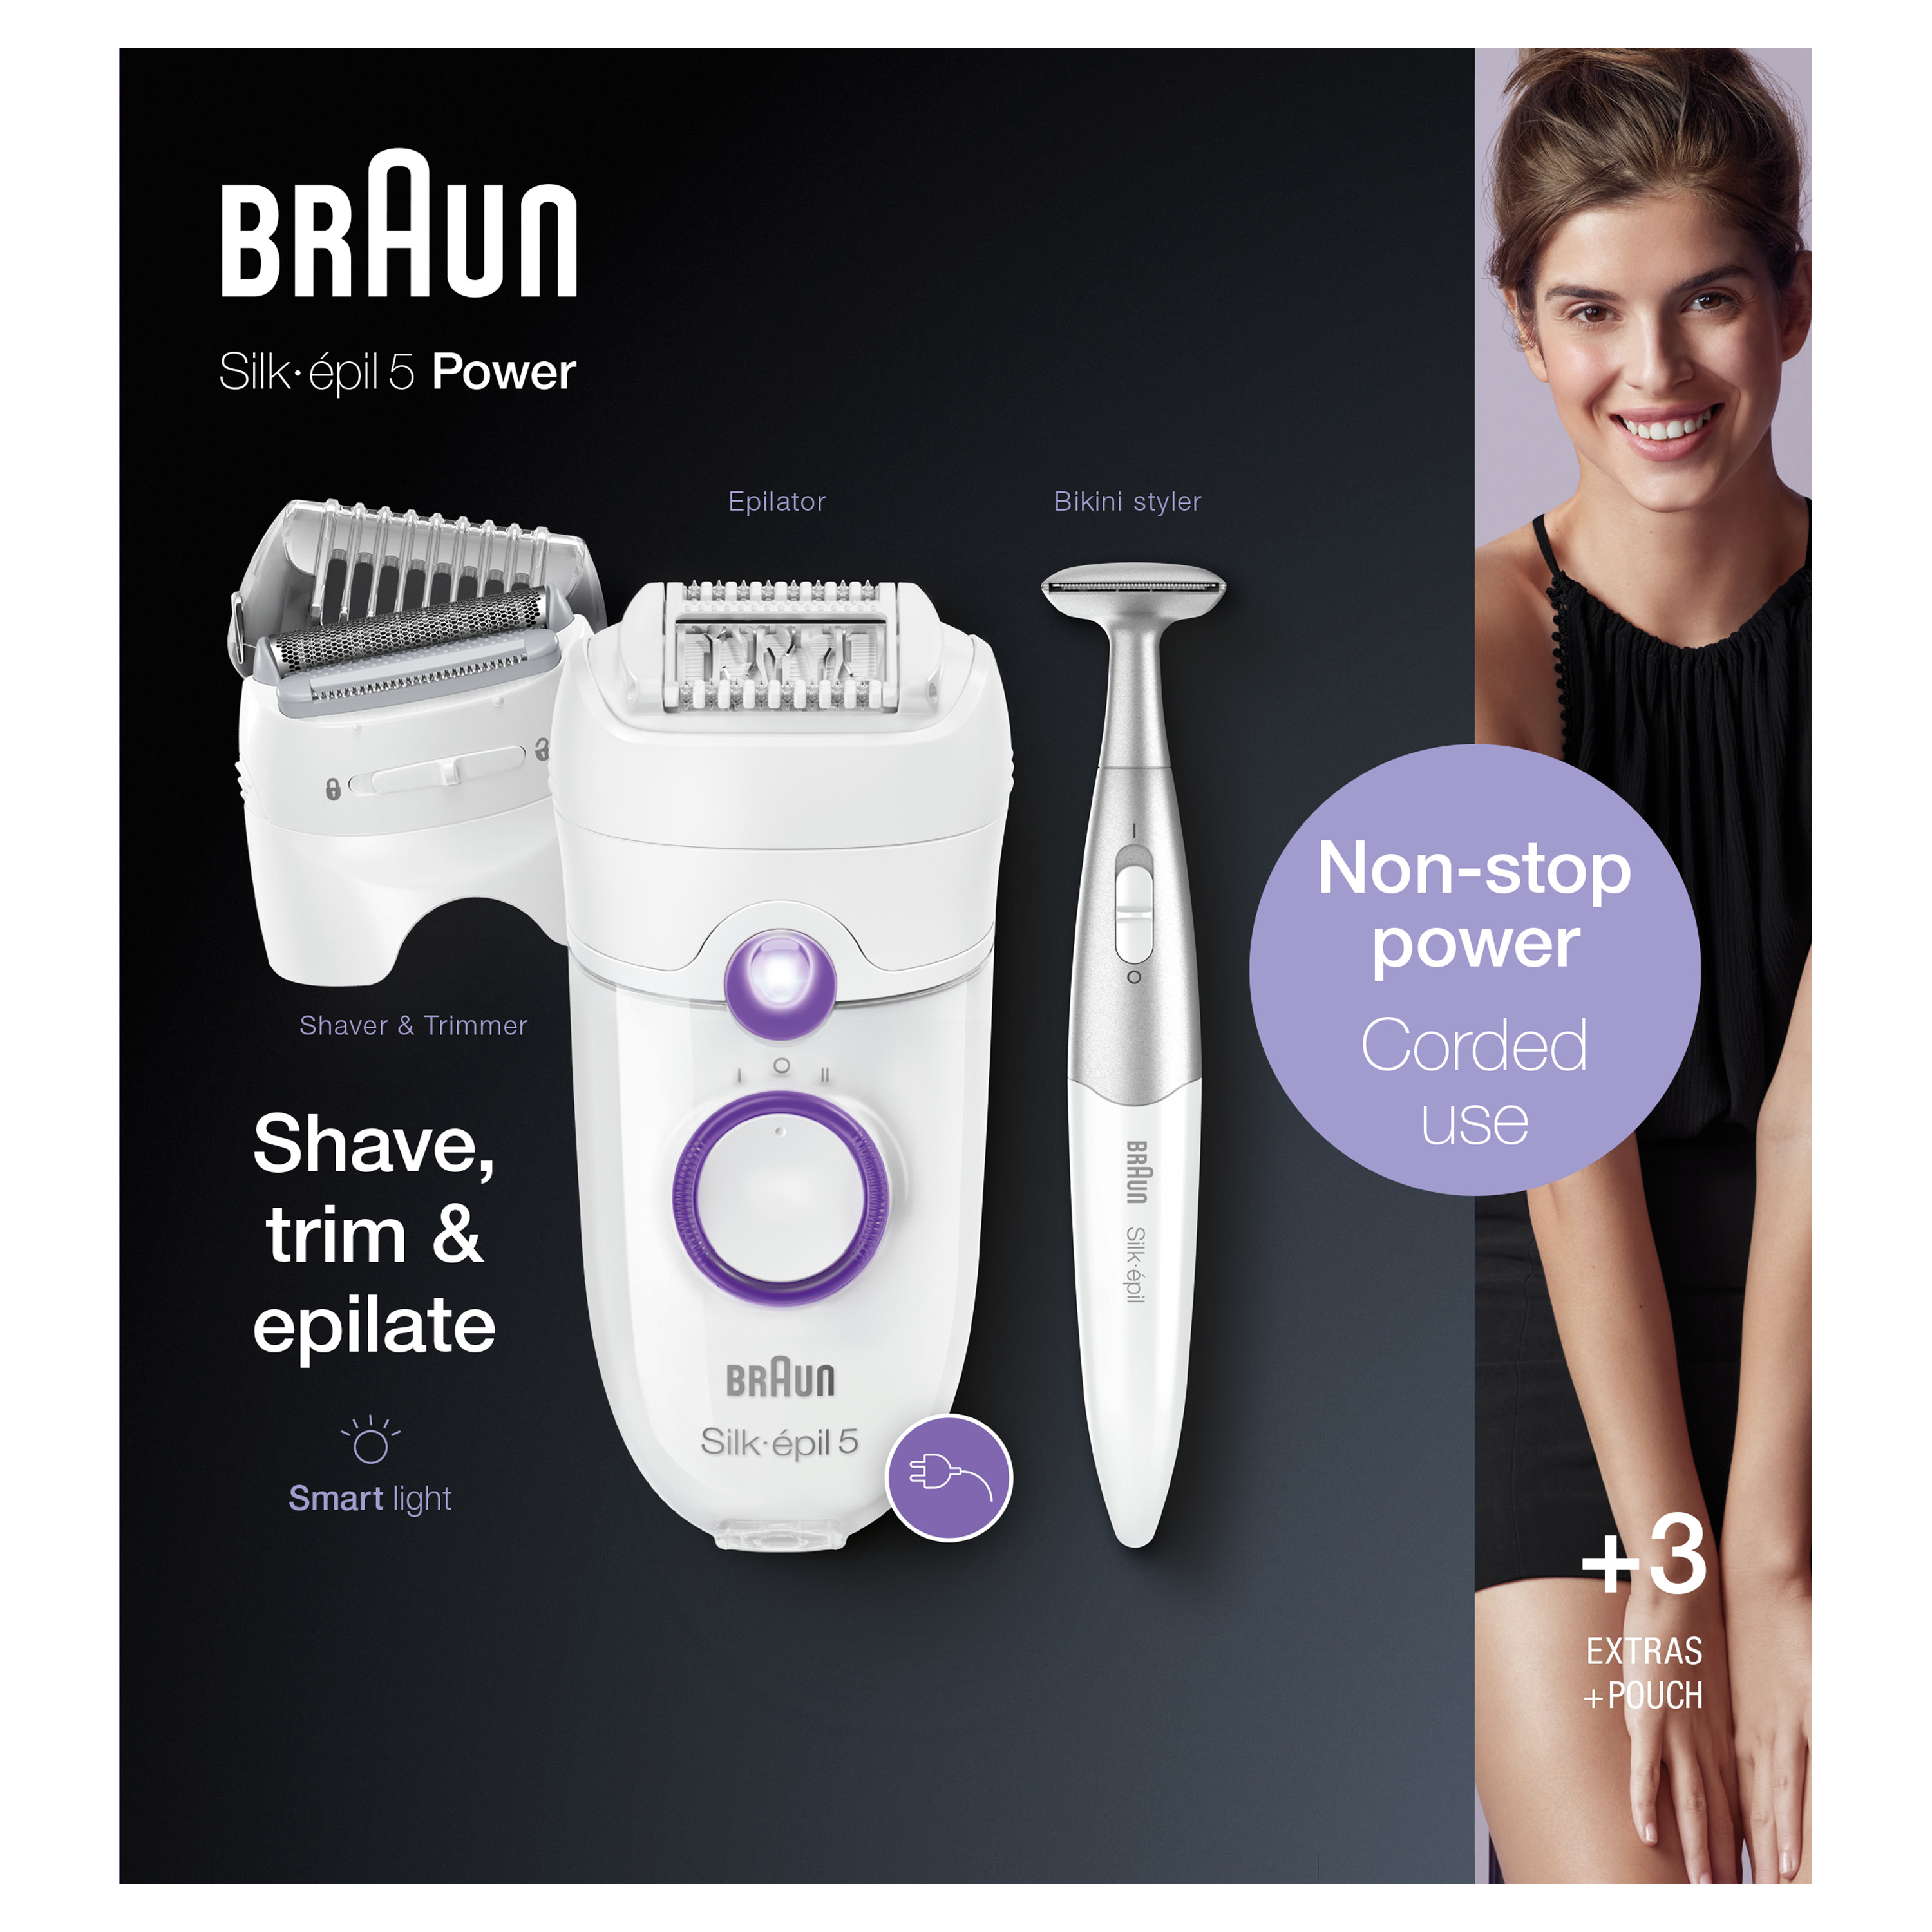 Braun Braun Silk-&#233;pil 5-825, Epilator Voor Beginners met Snoer, Scheerkop, Trimmeropzetstuk, Bikinistyler